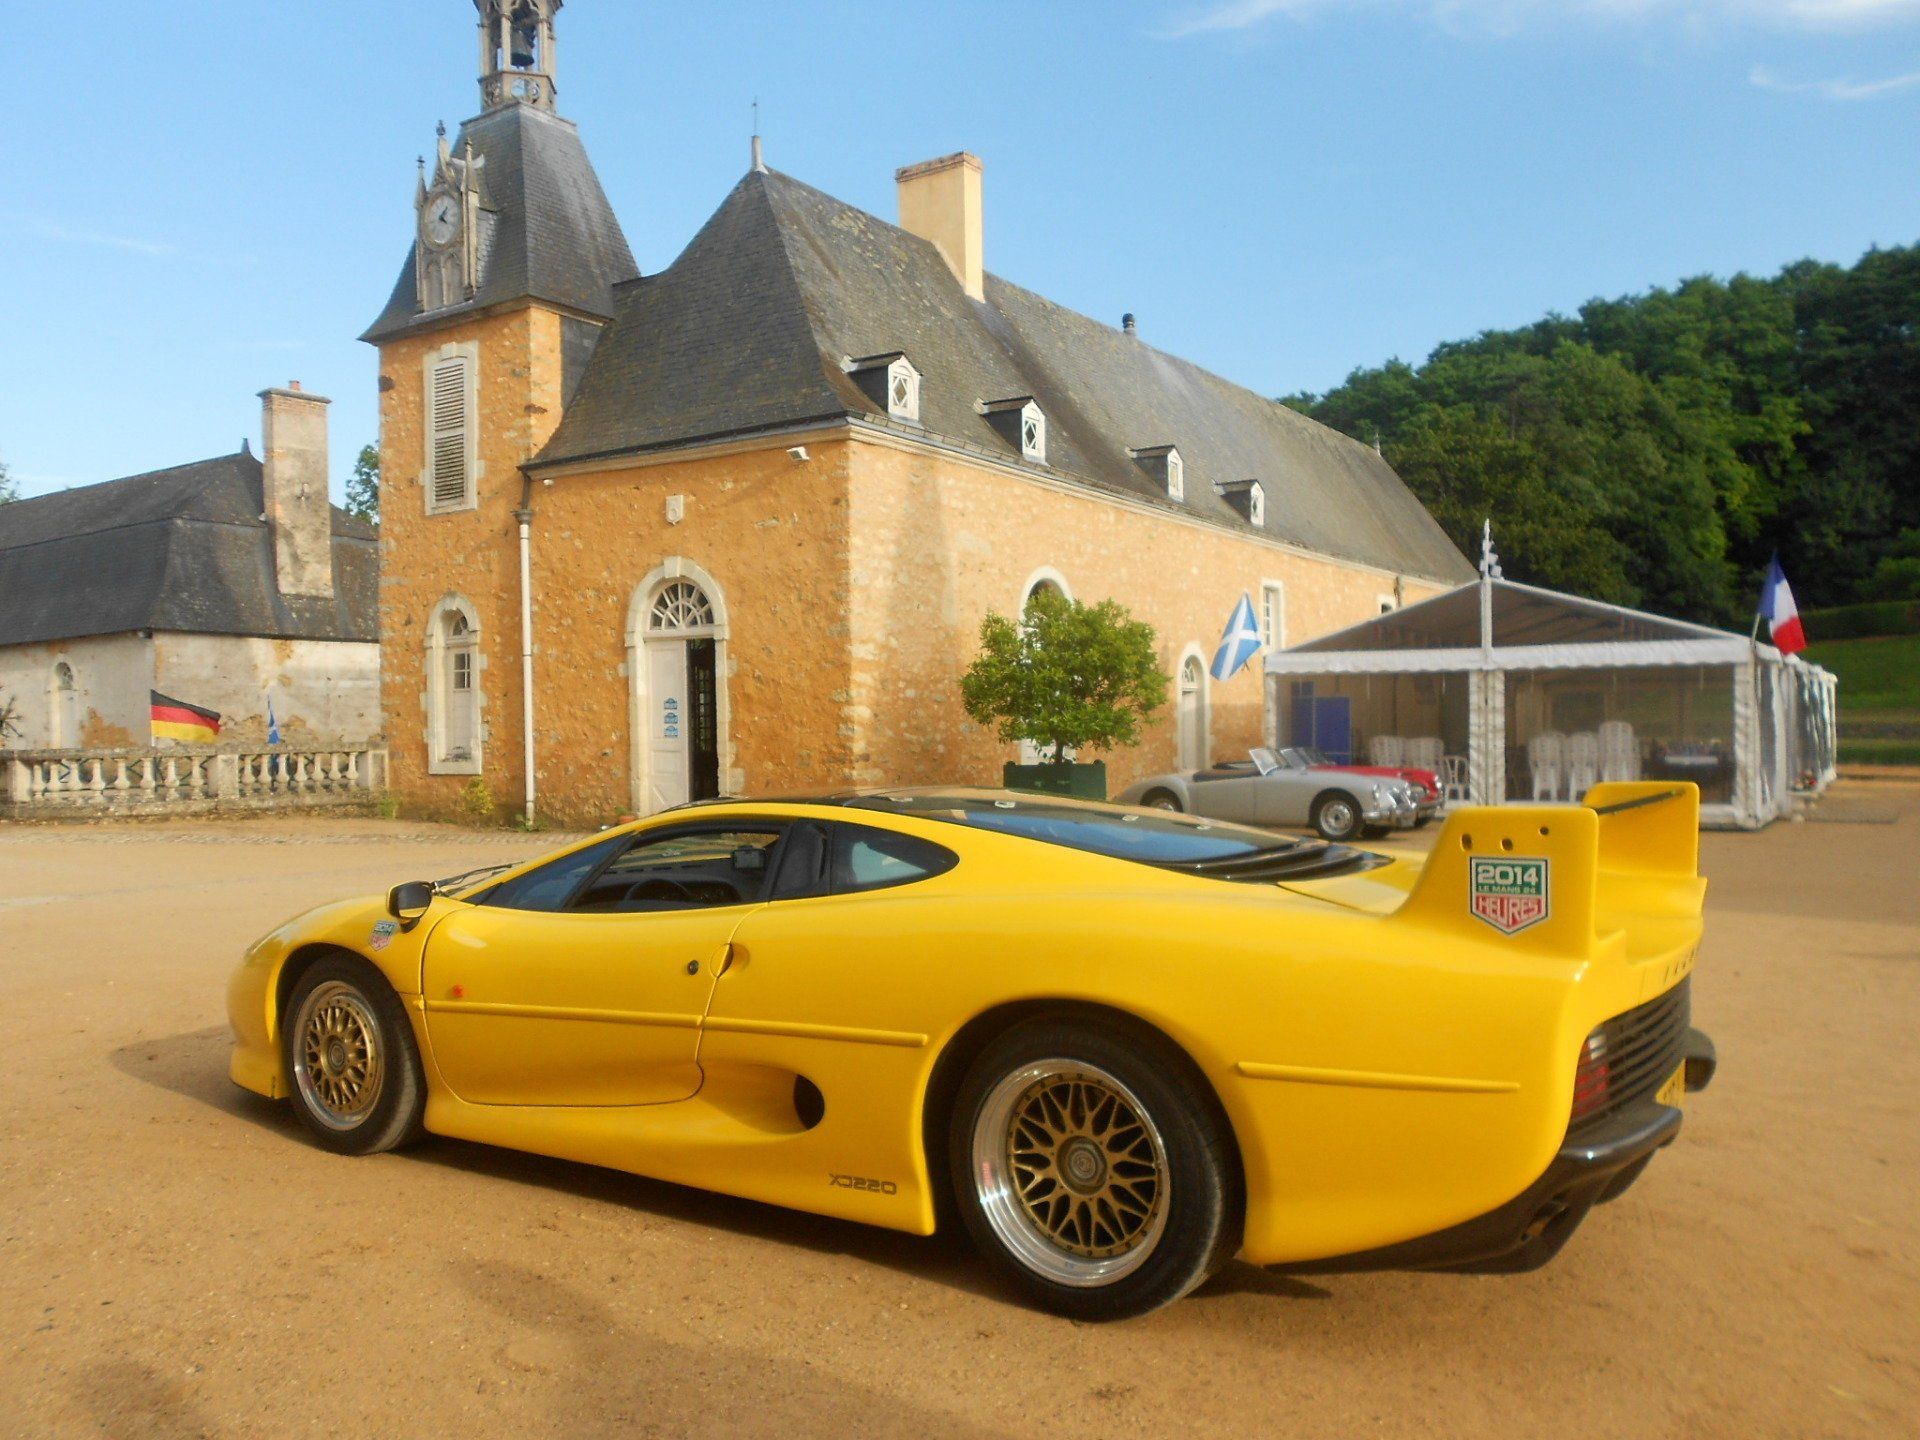 Jaguar XJ 220 at Chateau de Dobert